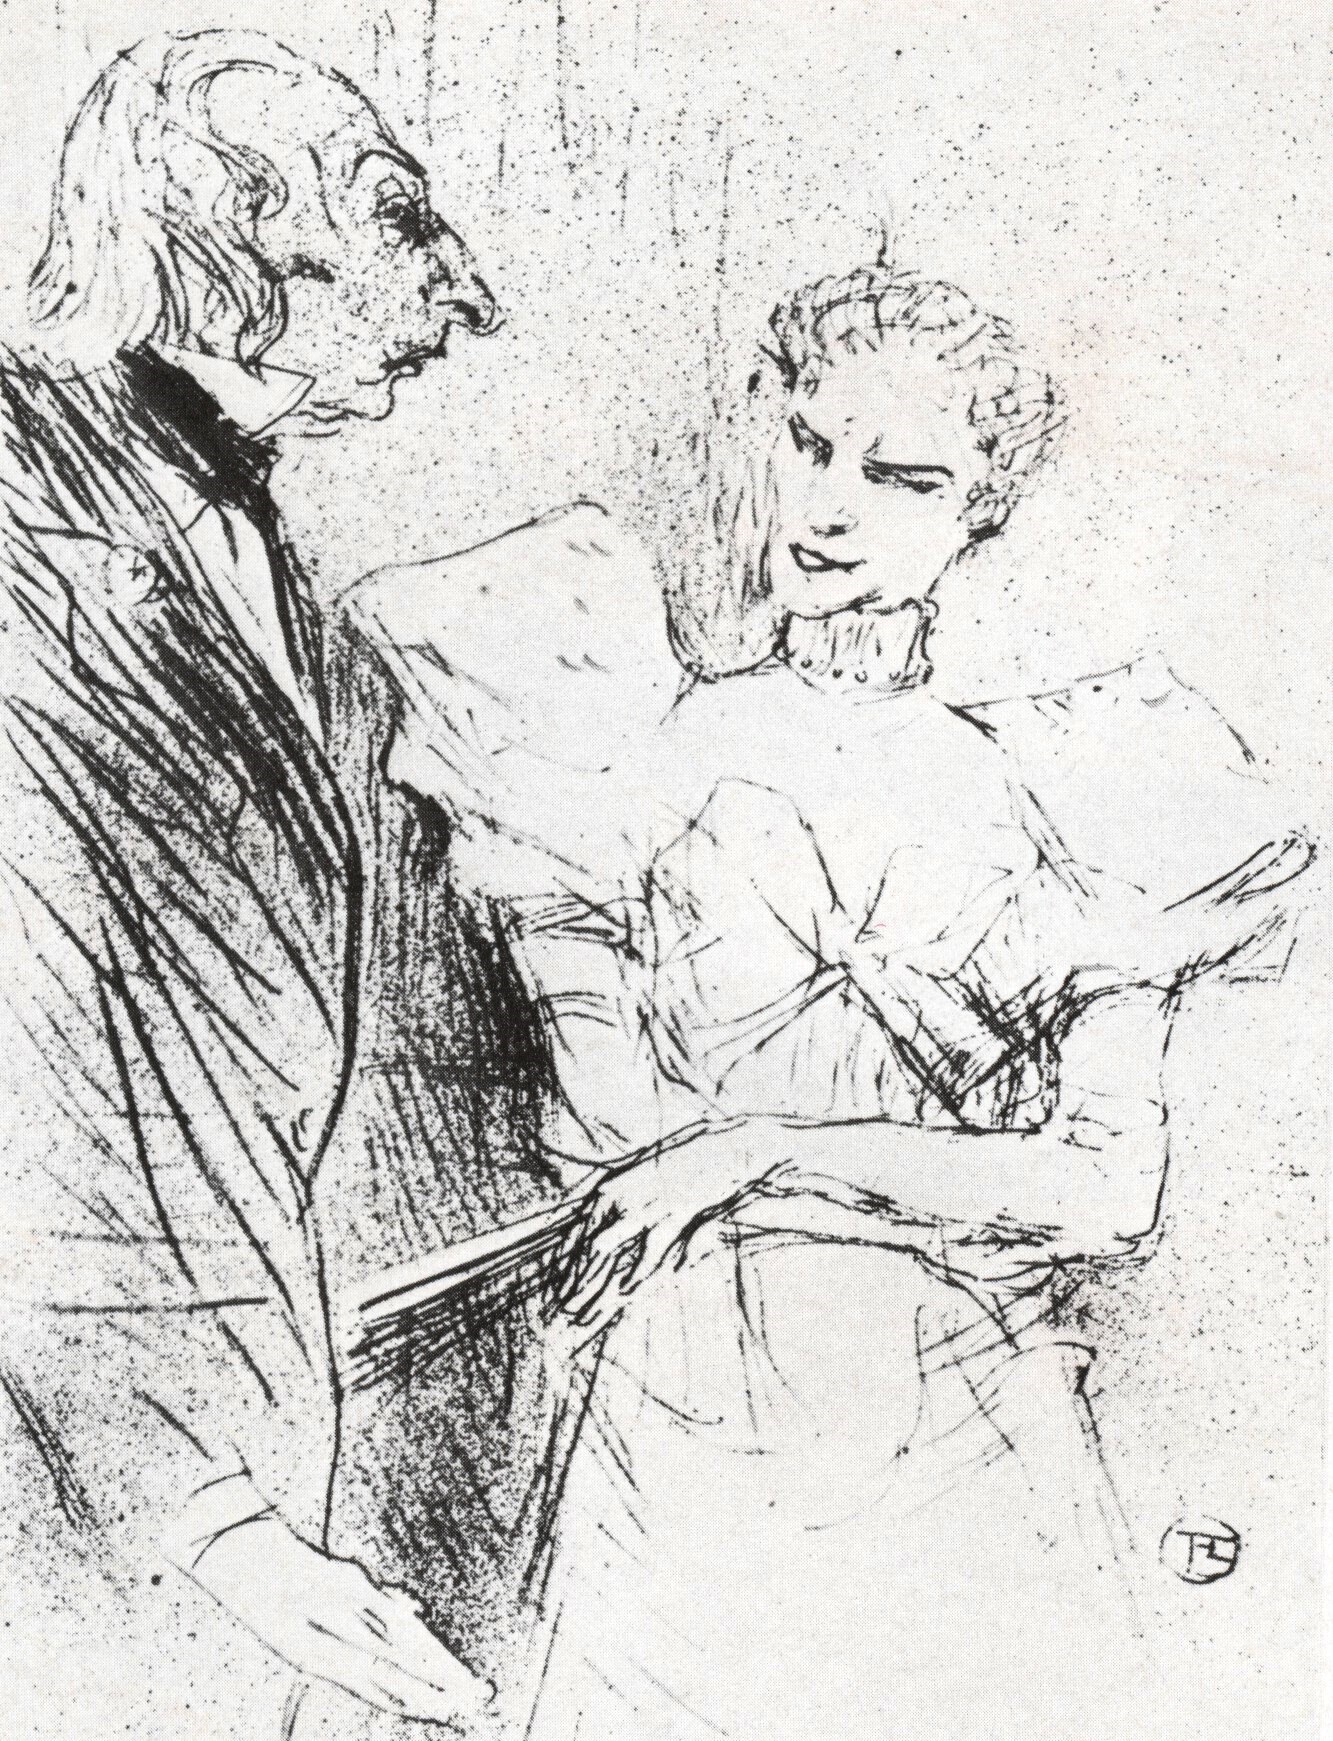 Анри де Тулуз-Лотрек. "Актёры Брандес и Лелу Ар". 1894.